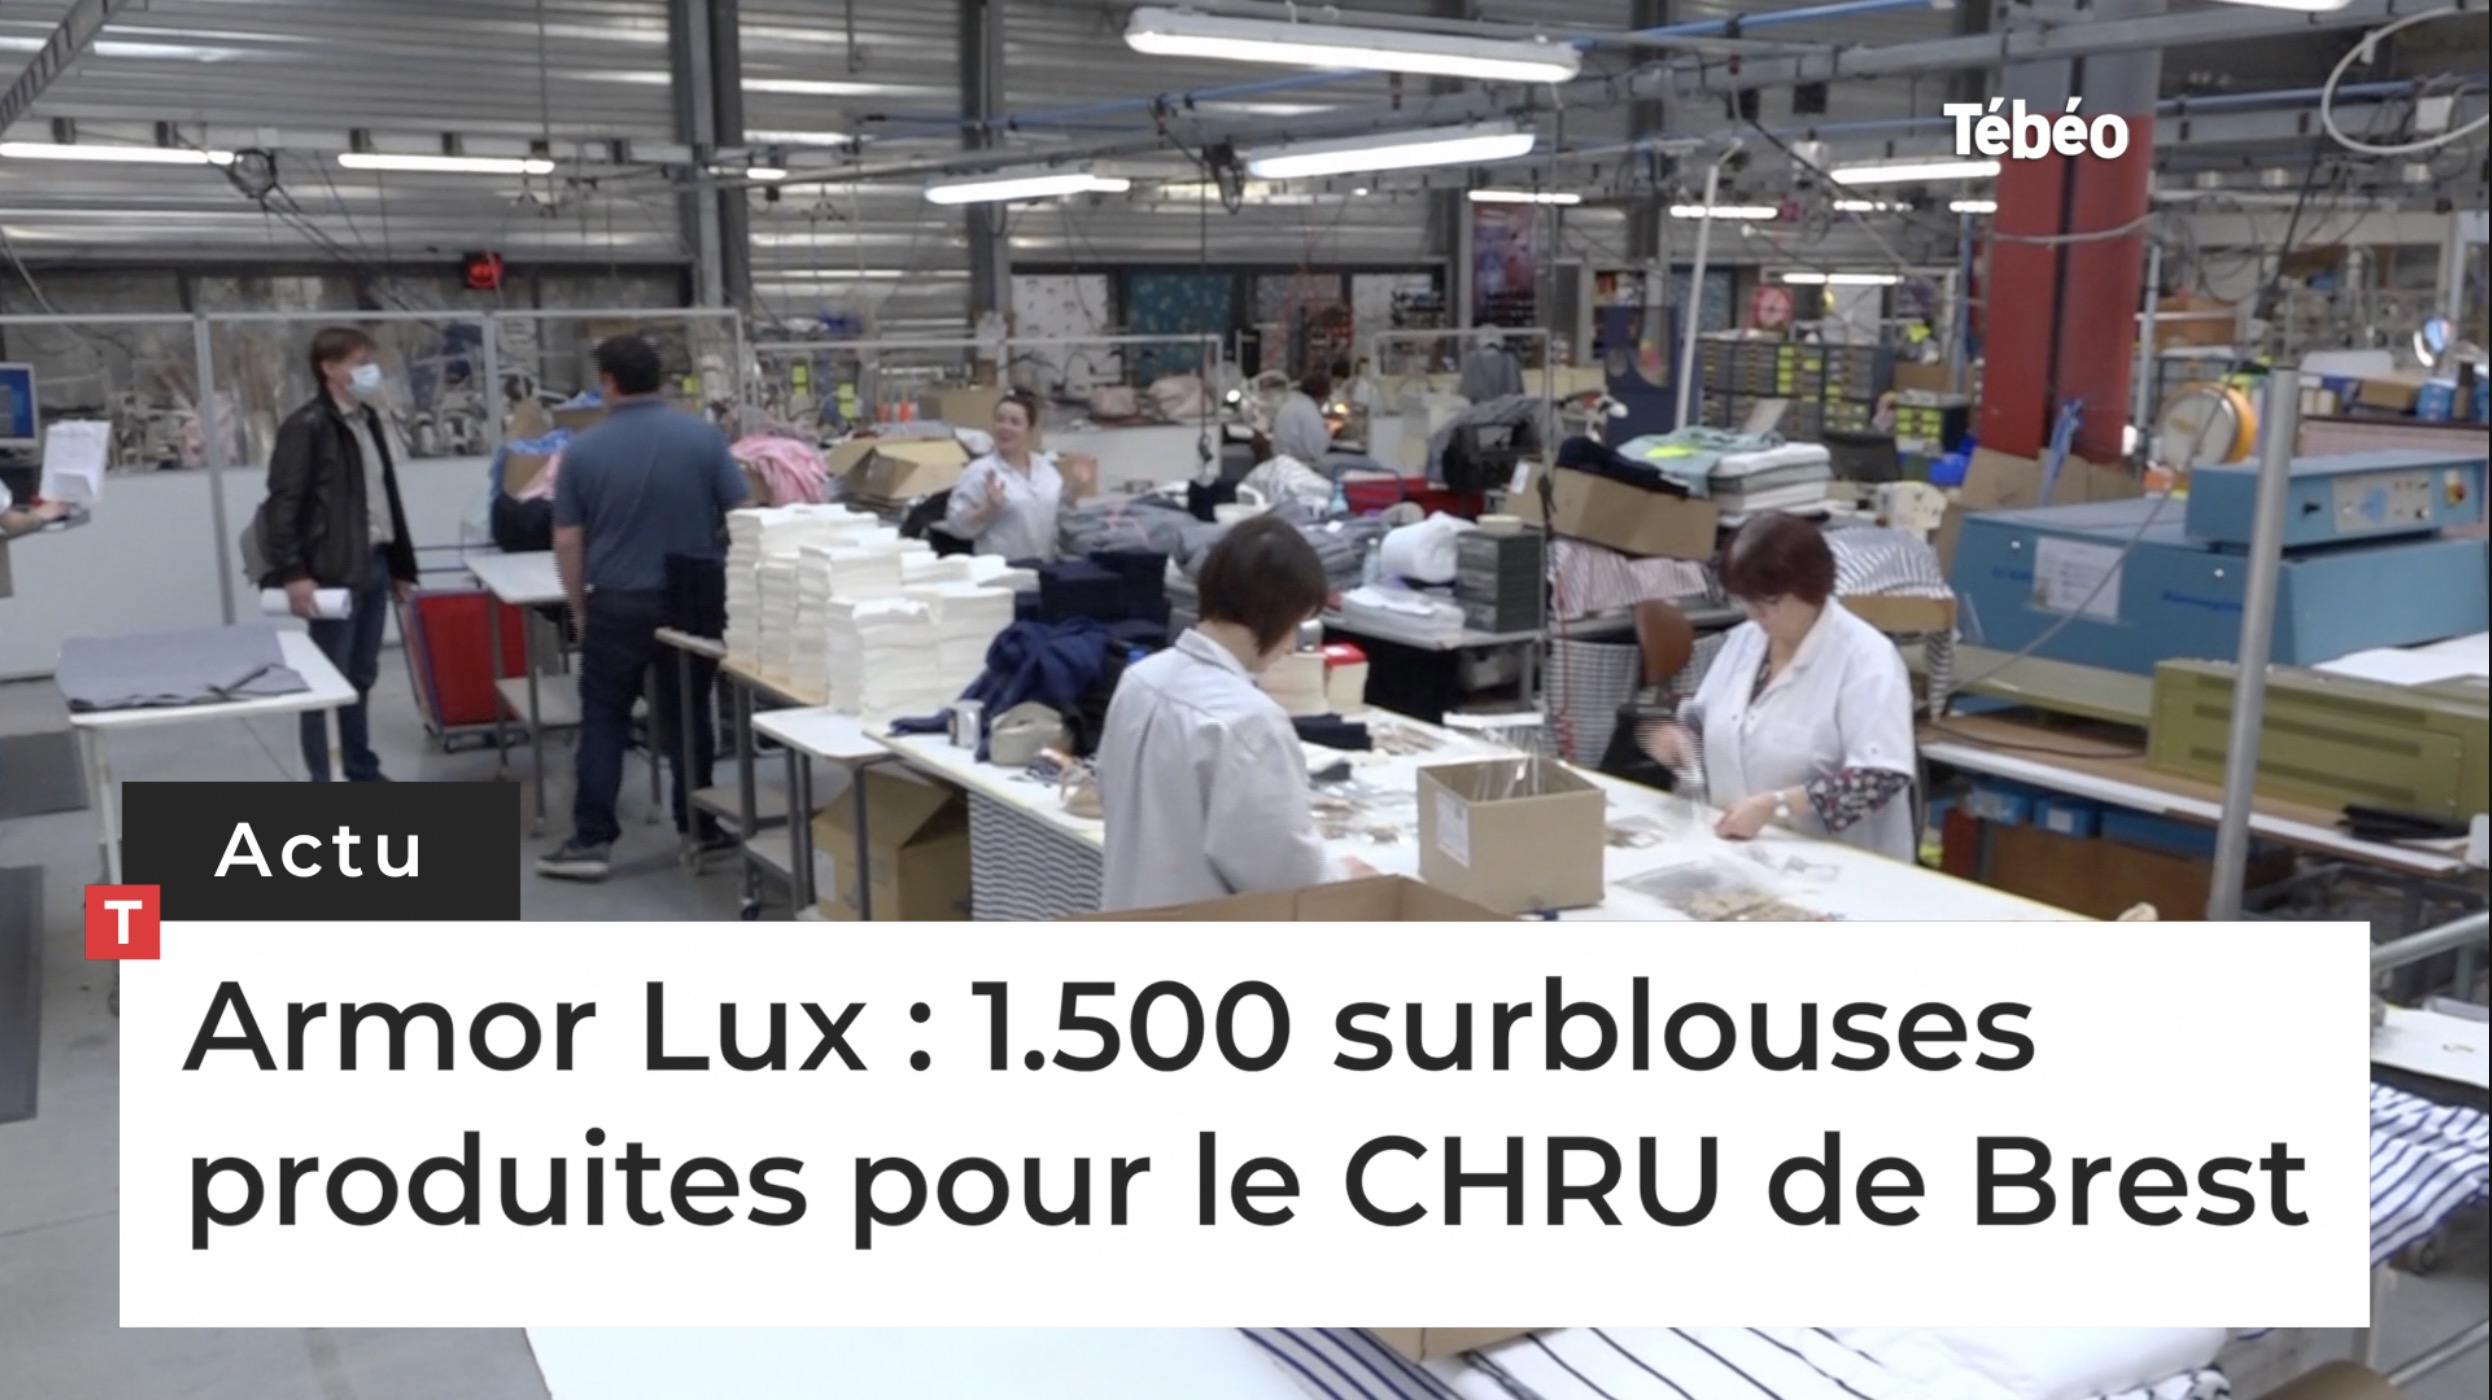 Armor Lux : 1.500 surblouses produites pour le CHRU de Brest (Le Télégramme)